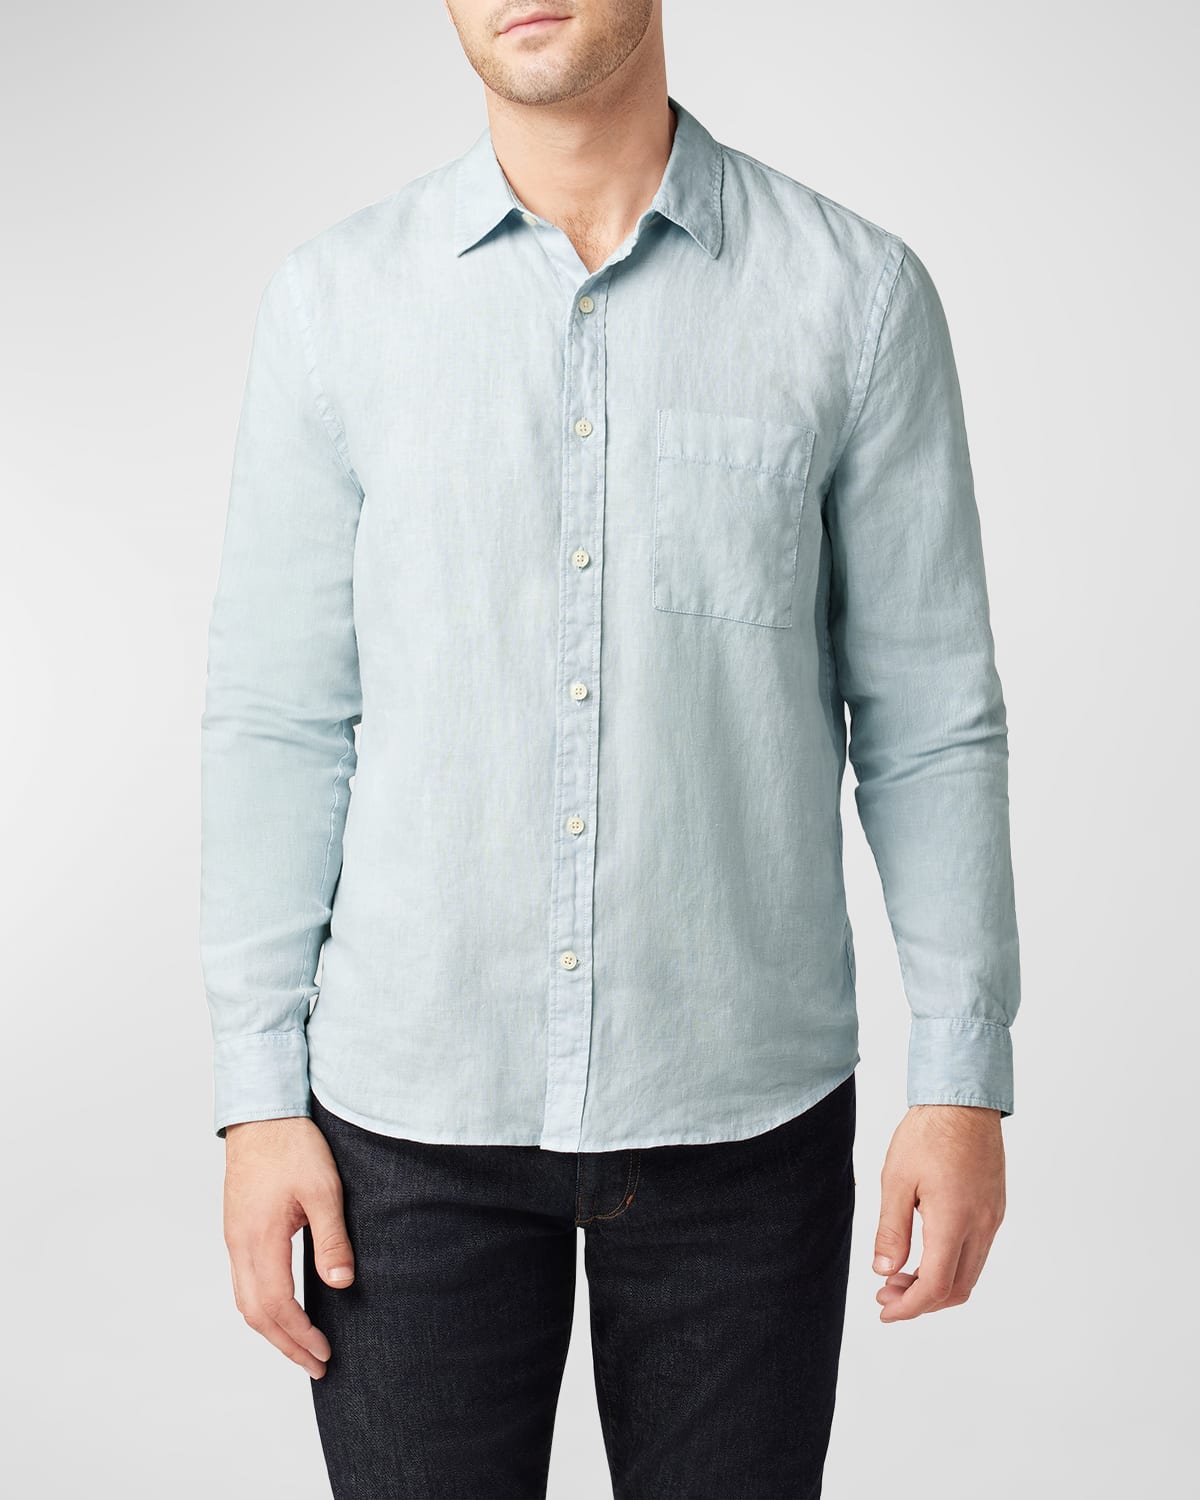 Men's Solid Linen Sport Shirt